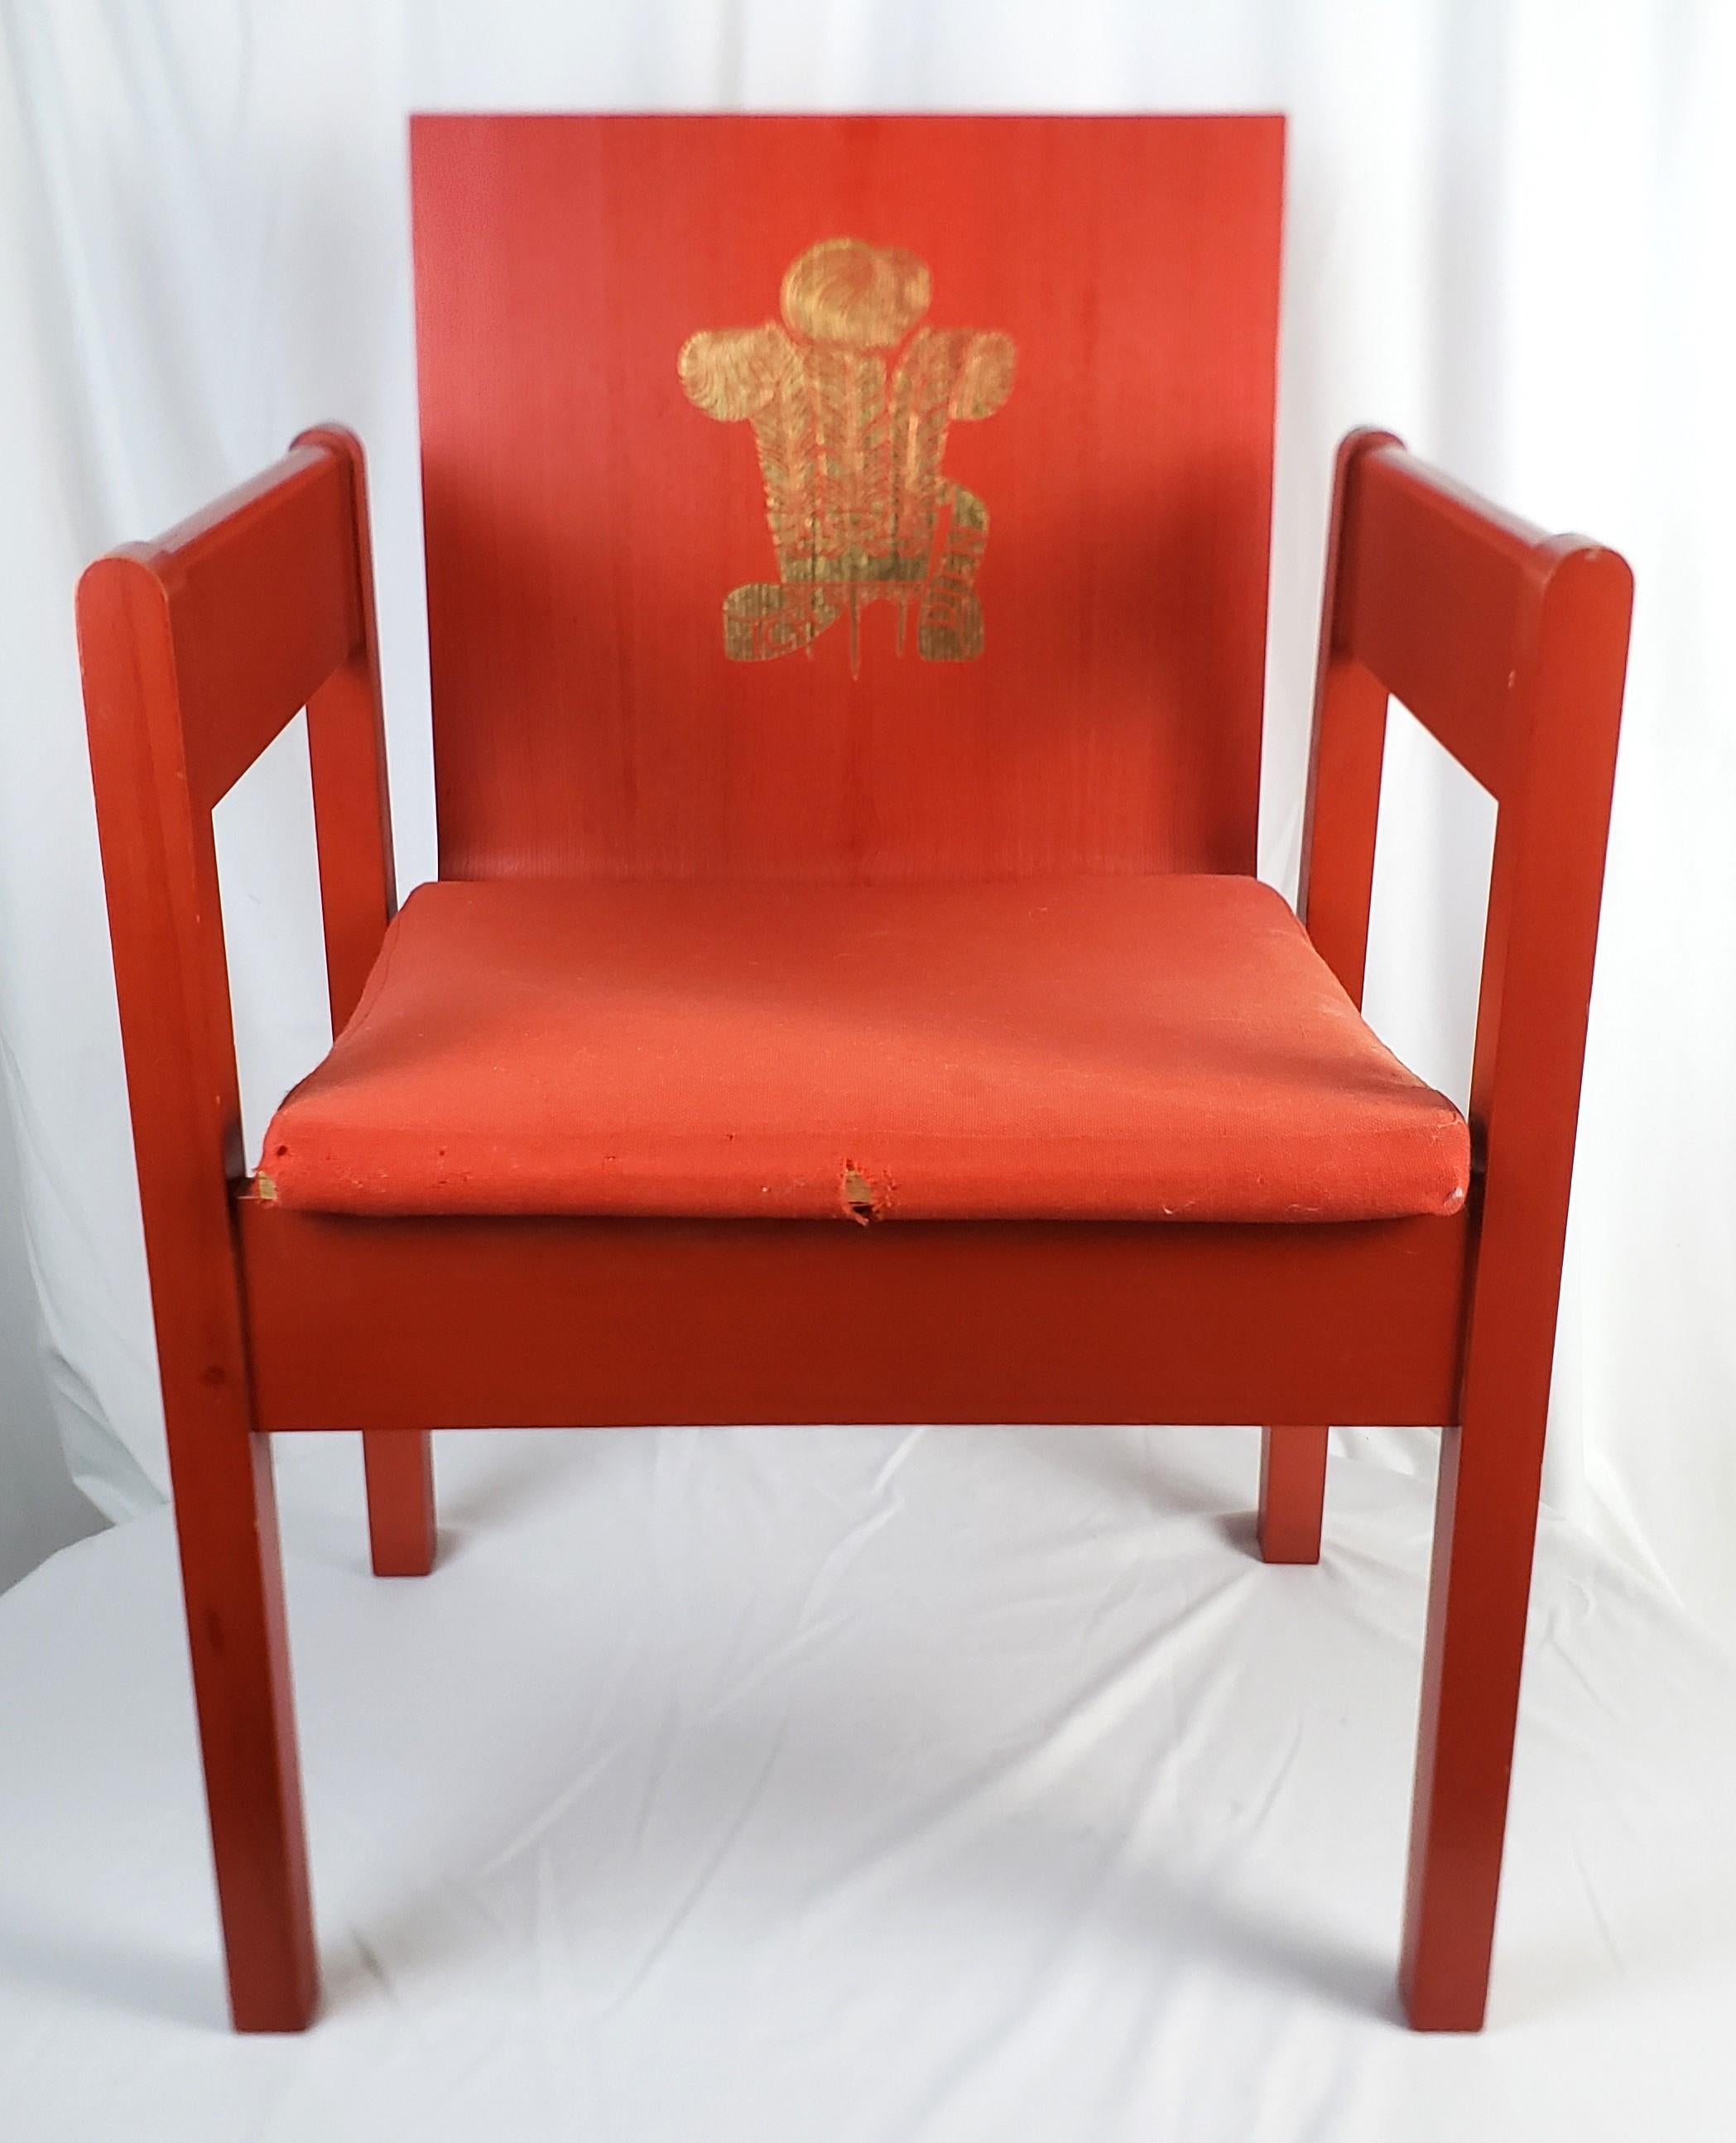 Dieser Stuhl wurde 1969 von Lord Snowden entworfen und von Remploy für die Amtseinführungszeremonie von Prinz Charles hergestellt. Er ist im Stil der Jahrhundertmitte gehalten. Der Stuhl ist aus Esche mit einer Rückenlehne aus Bugholz gefertigt und